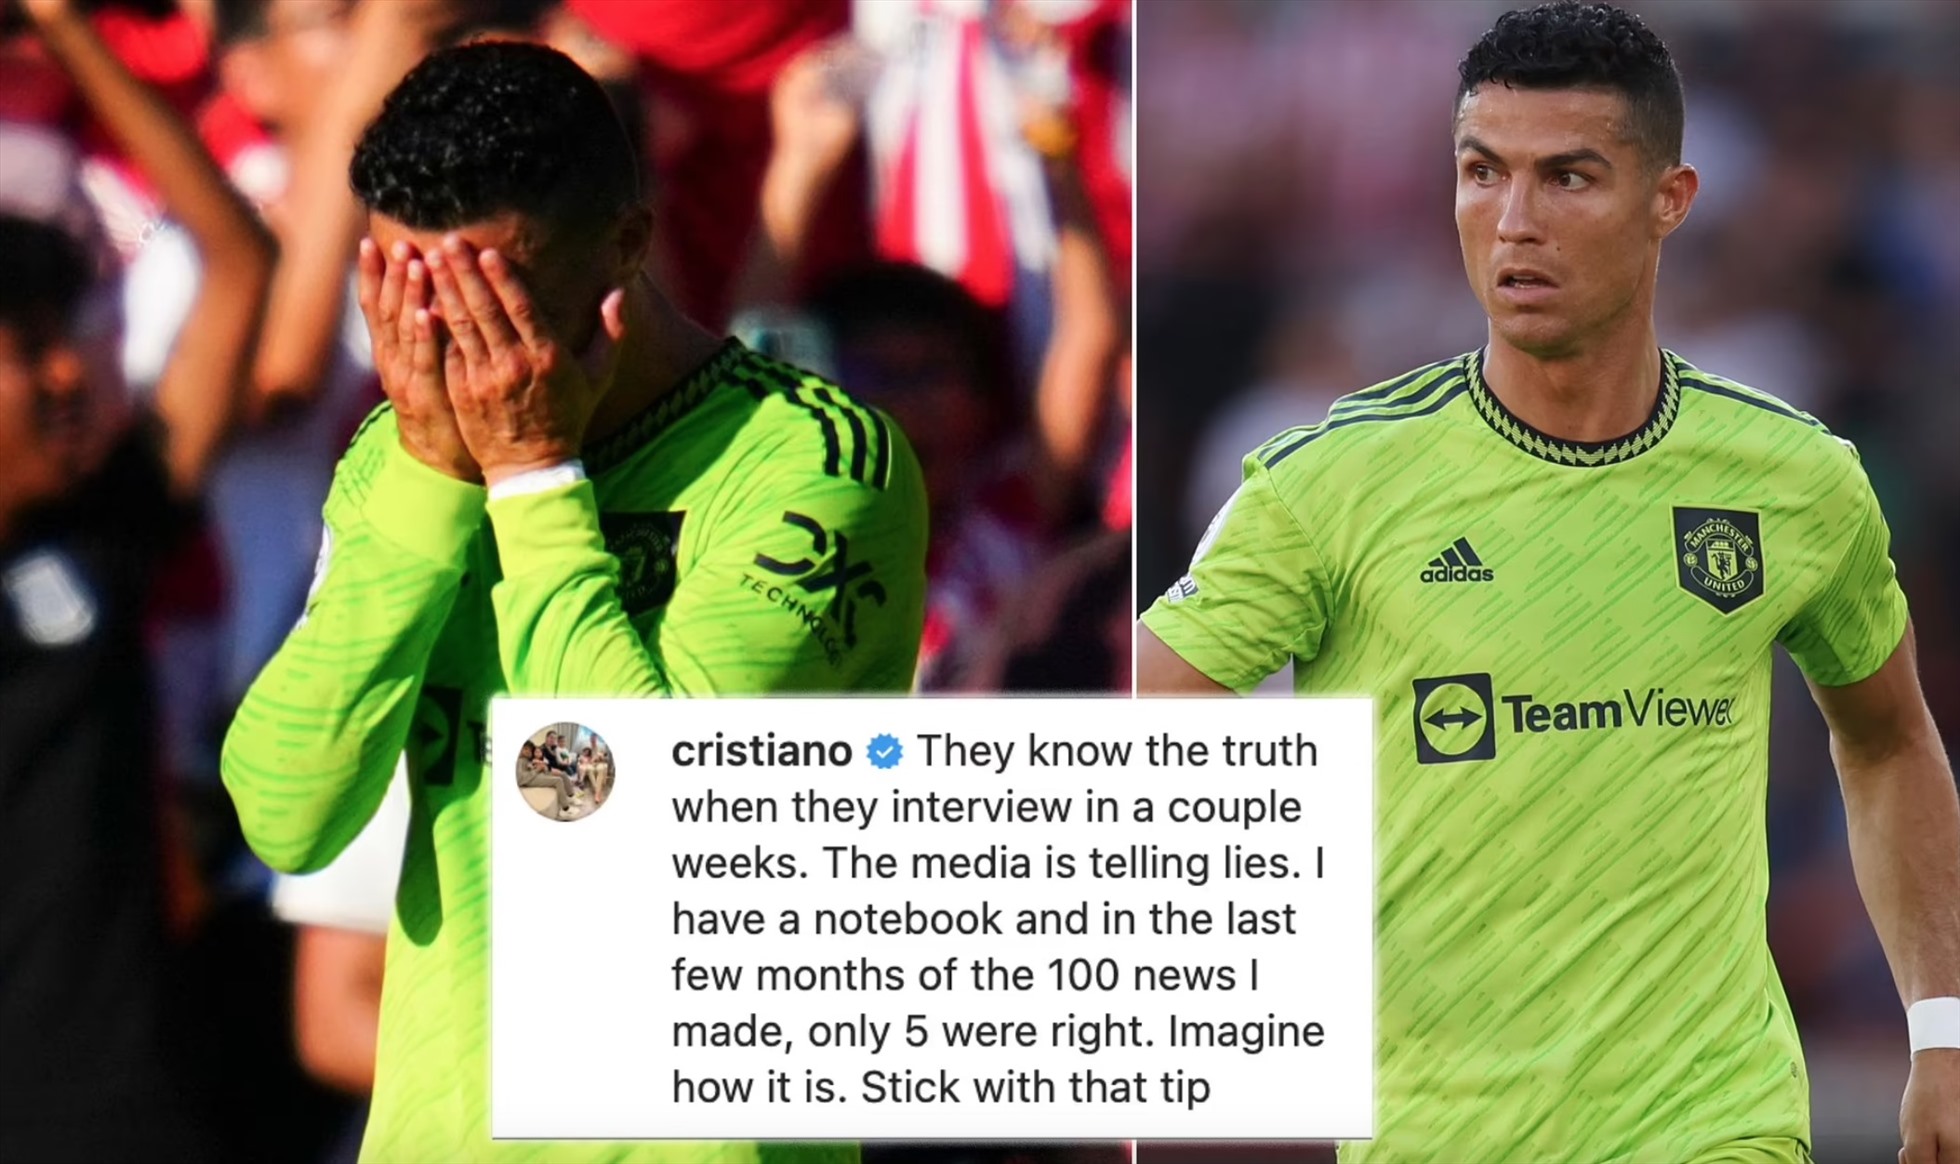 Ronaldo chỉ trích truyền thông và báo chí toàn đưa những điều dối trá về anh. Ảnh: Twitter